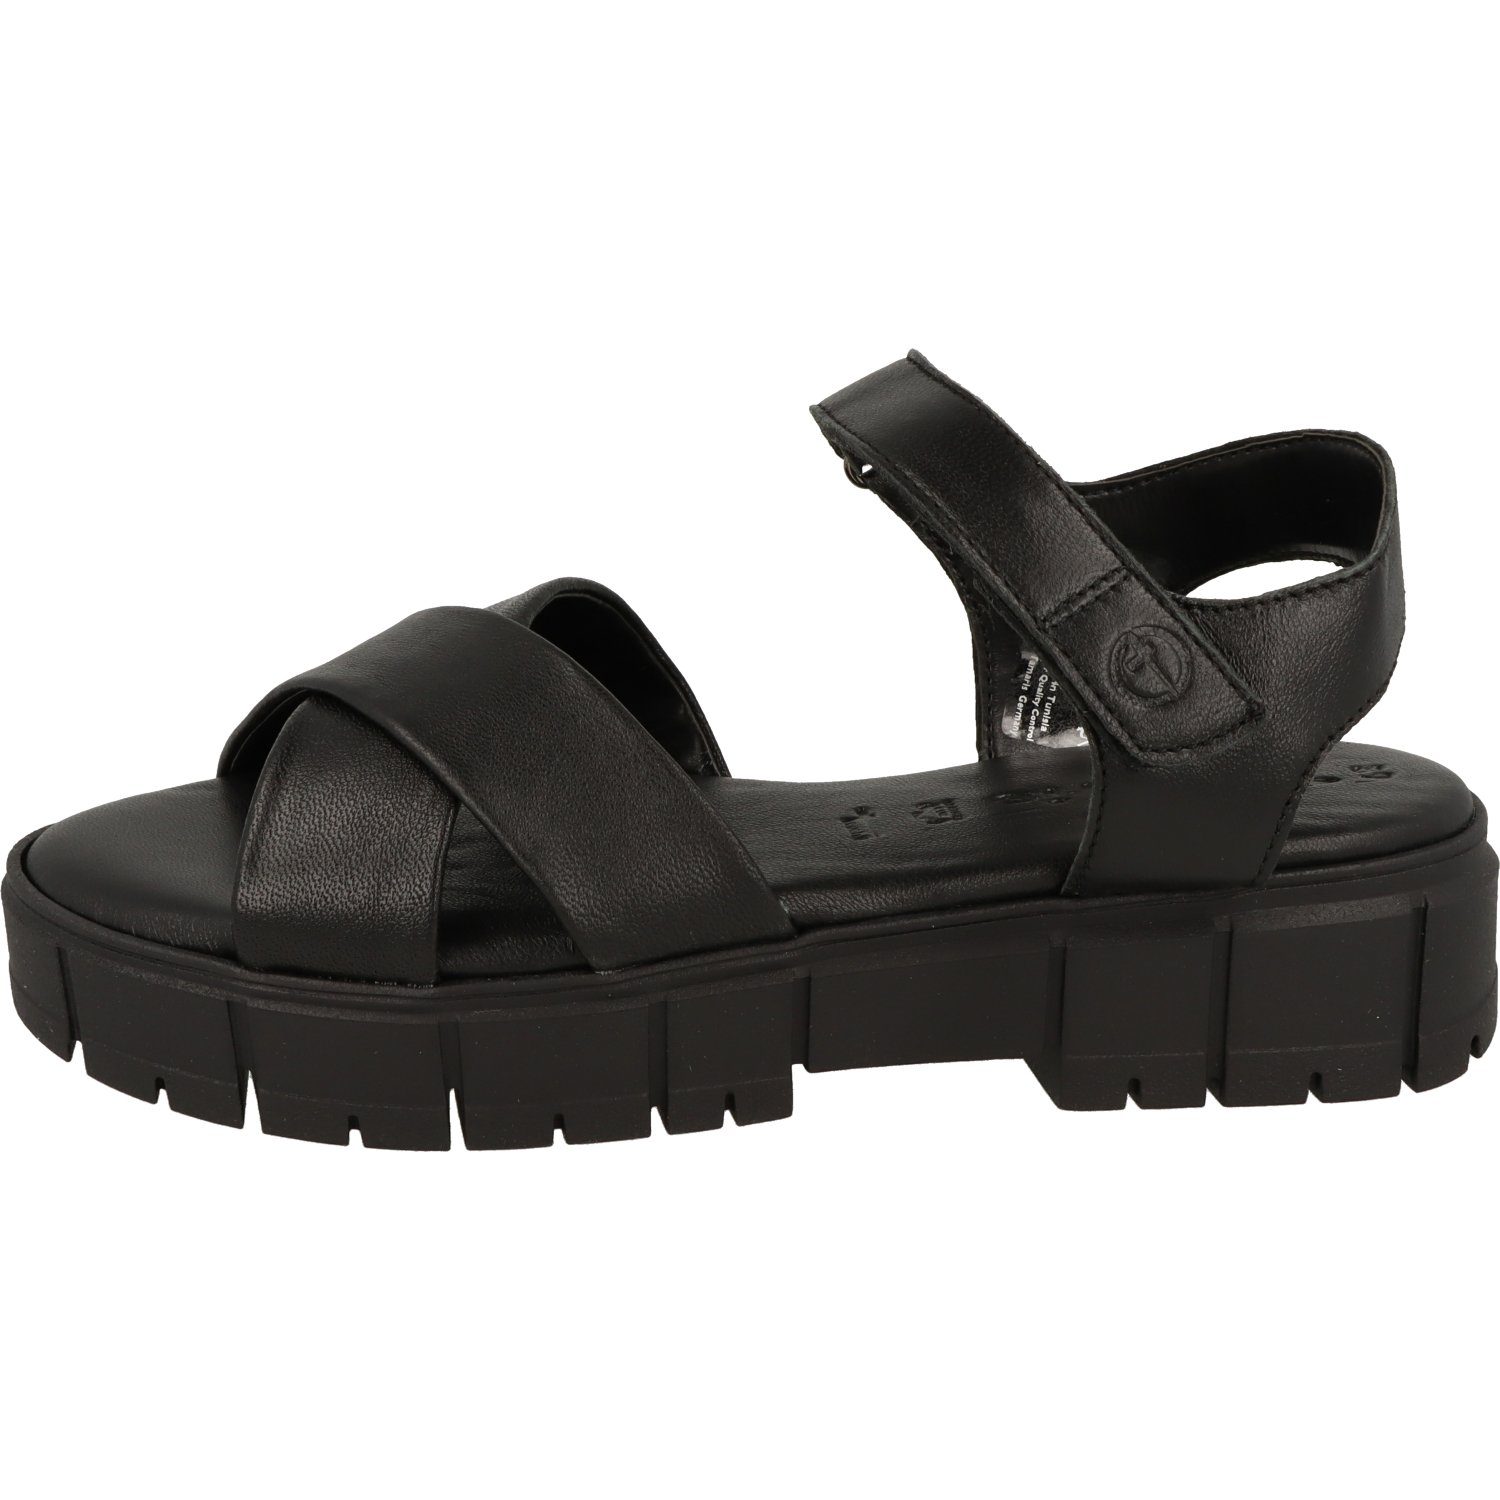 Schuhe Damen Leather 1-28242-20 Tamaris Black Klett Komfort Sandalette Plateausandale Leder